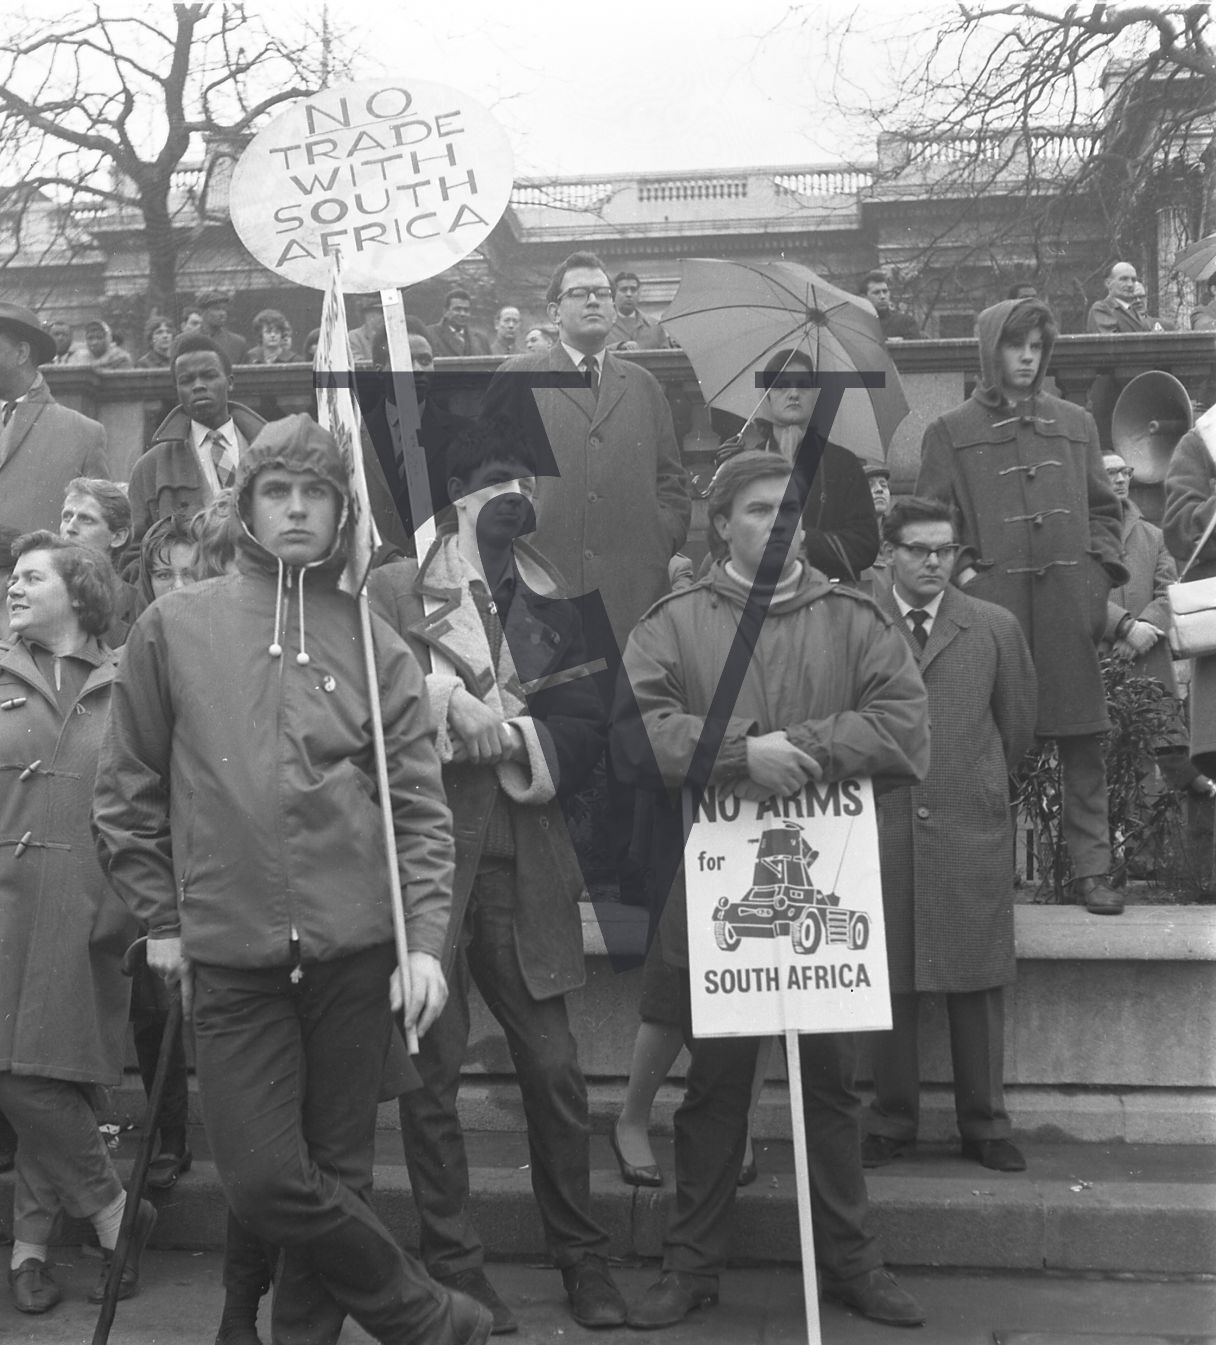 Anti-Apartheid Demo, Trafalgar Square, group with placards.